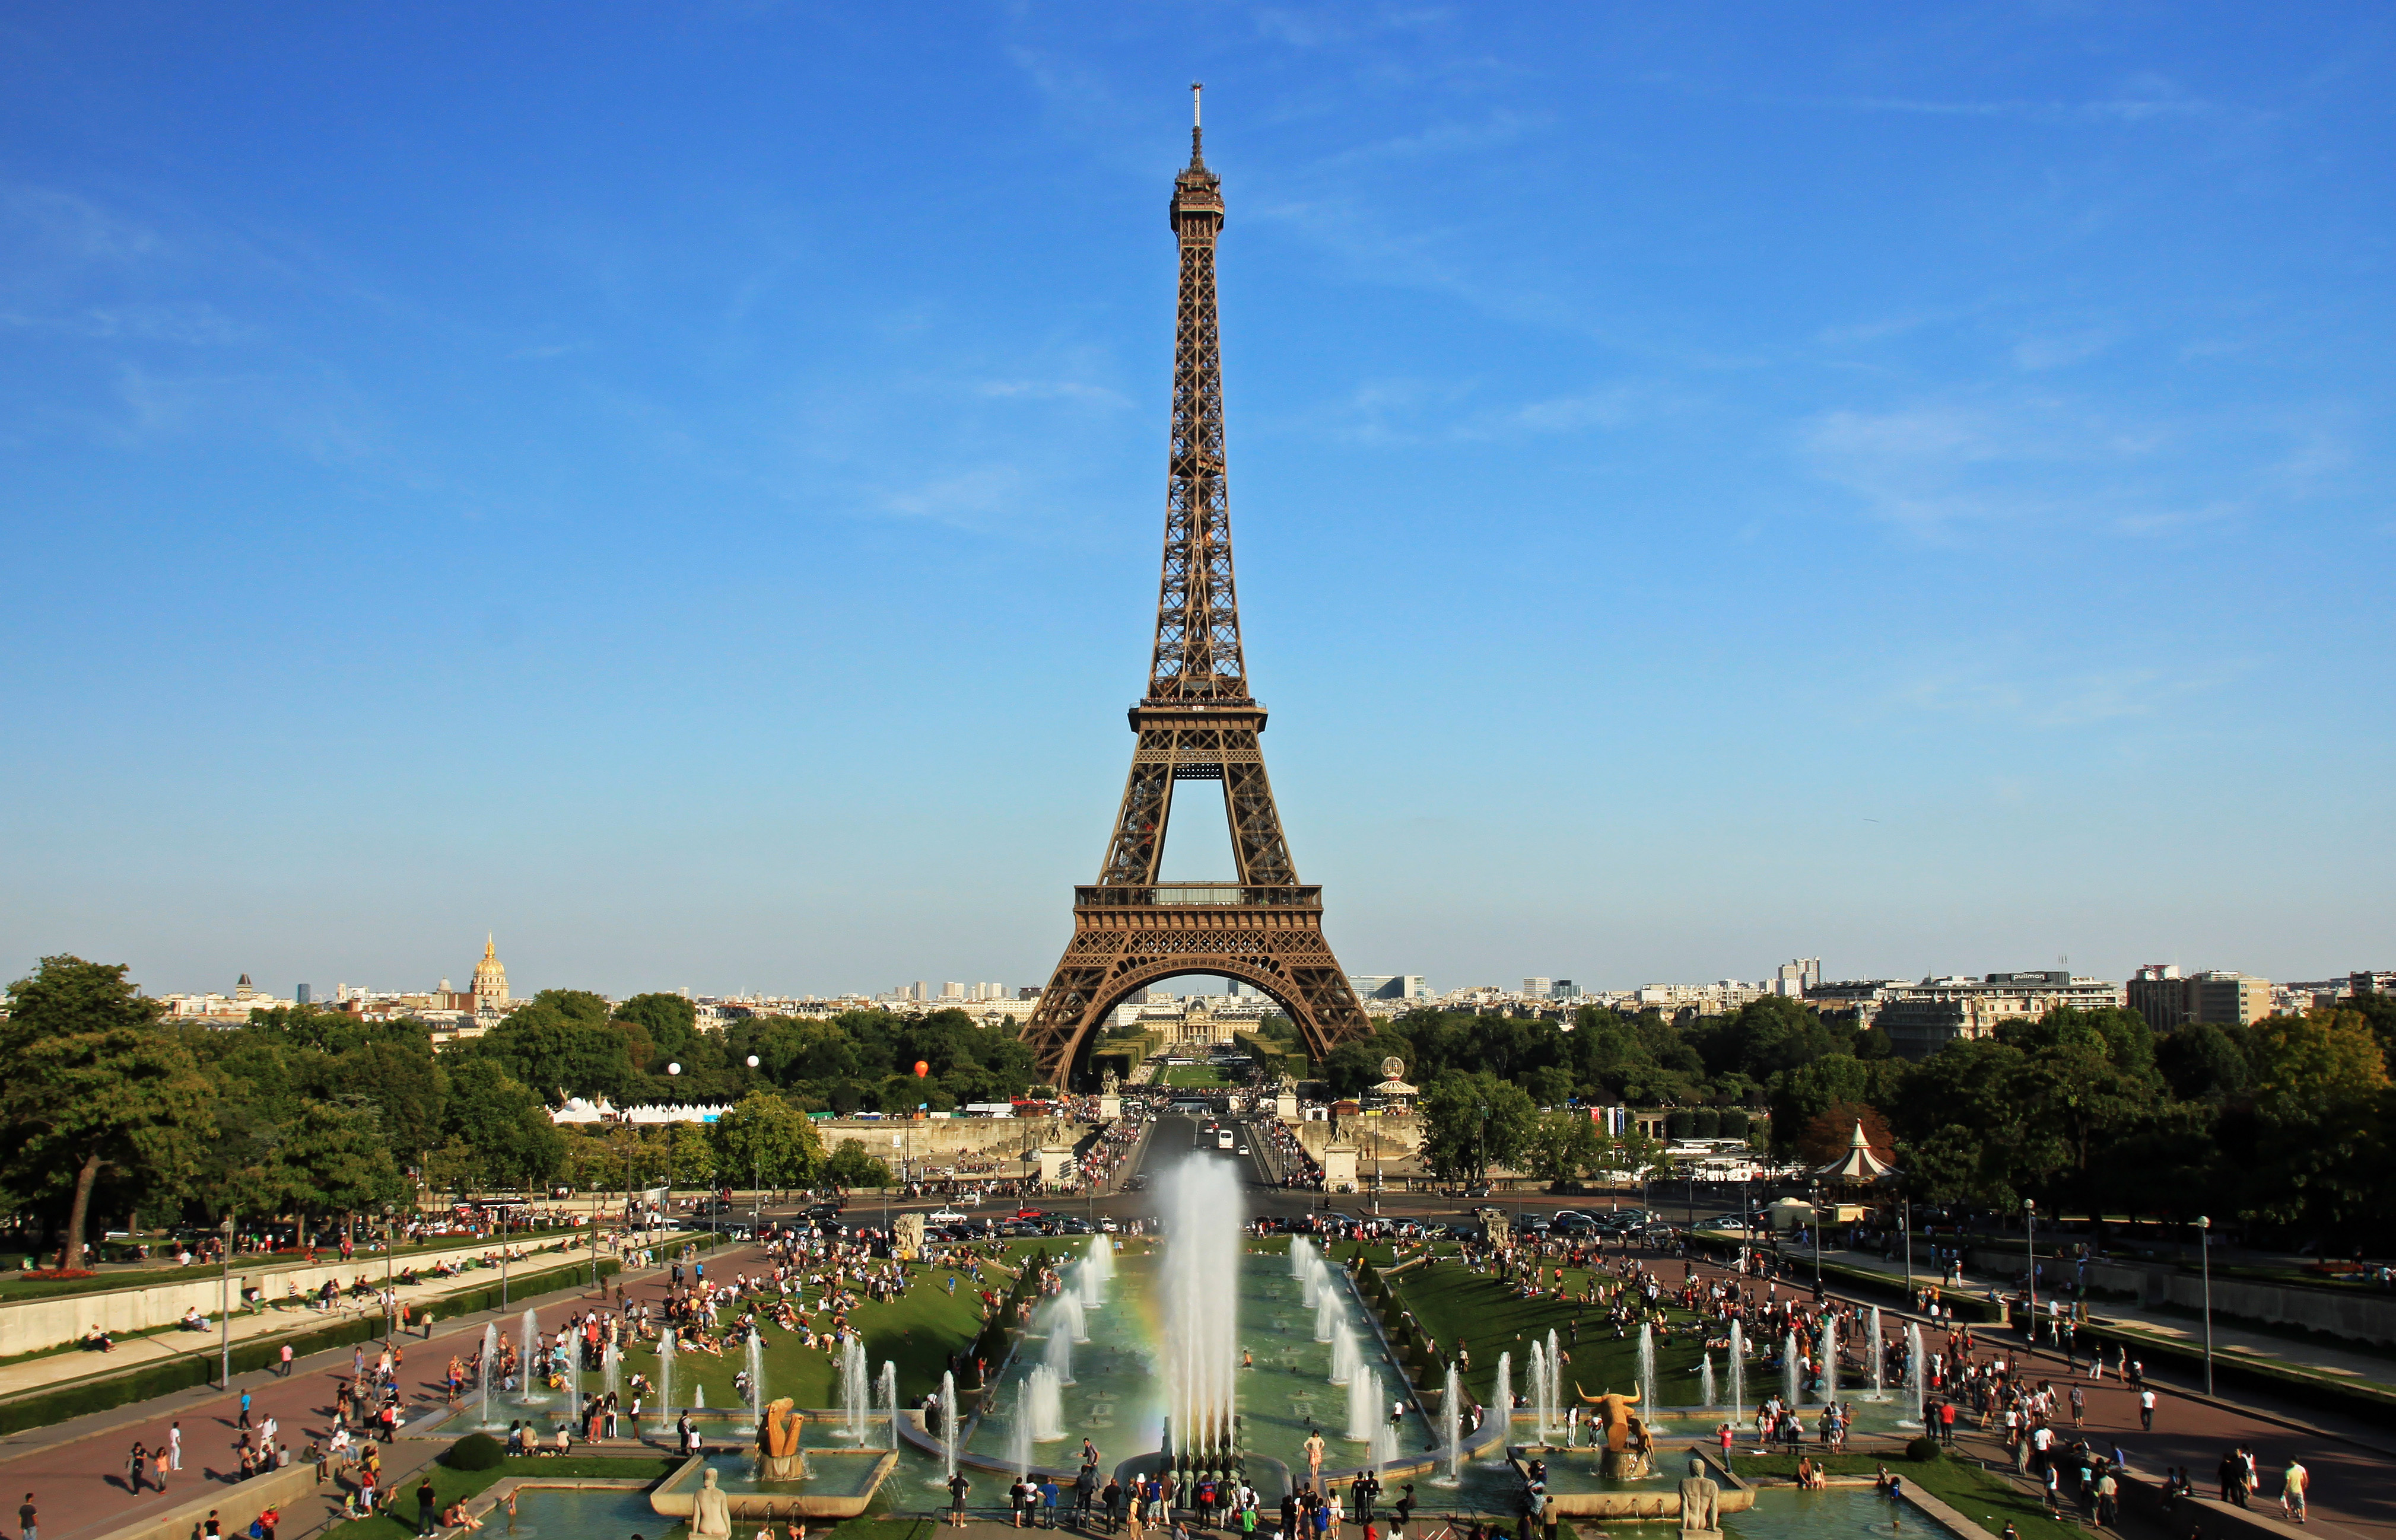 O PSG pediu autorização para a Gendarmaria francesa para celebrar um evento na Praça de Trocadero, com a Torre Eiffel ao fundo